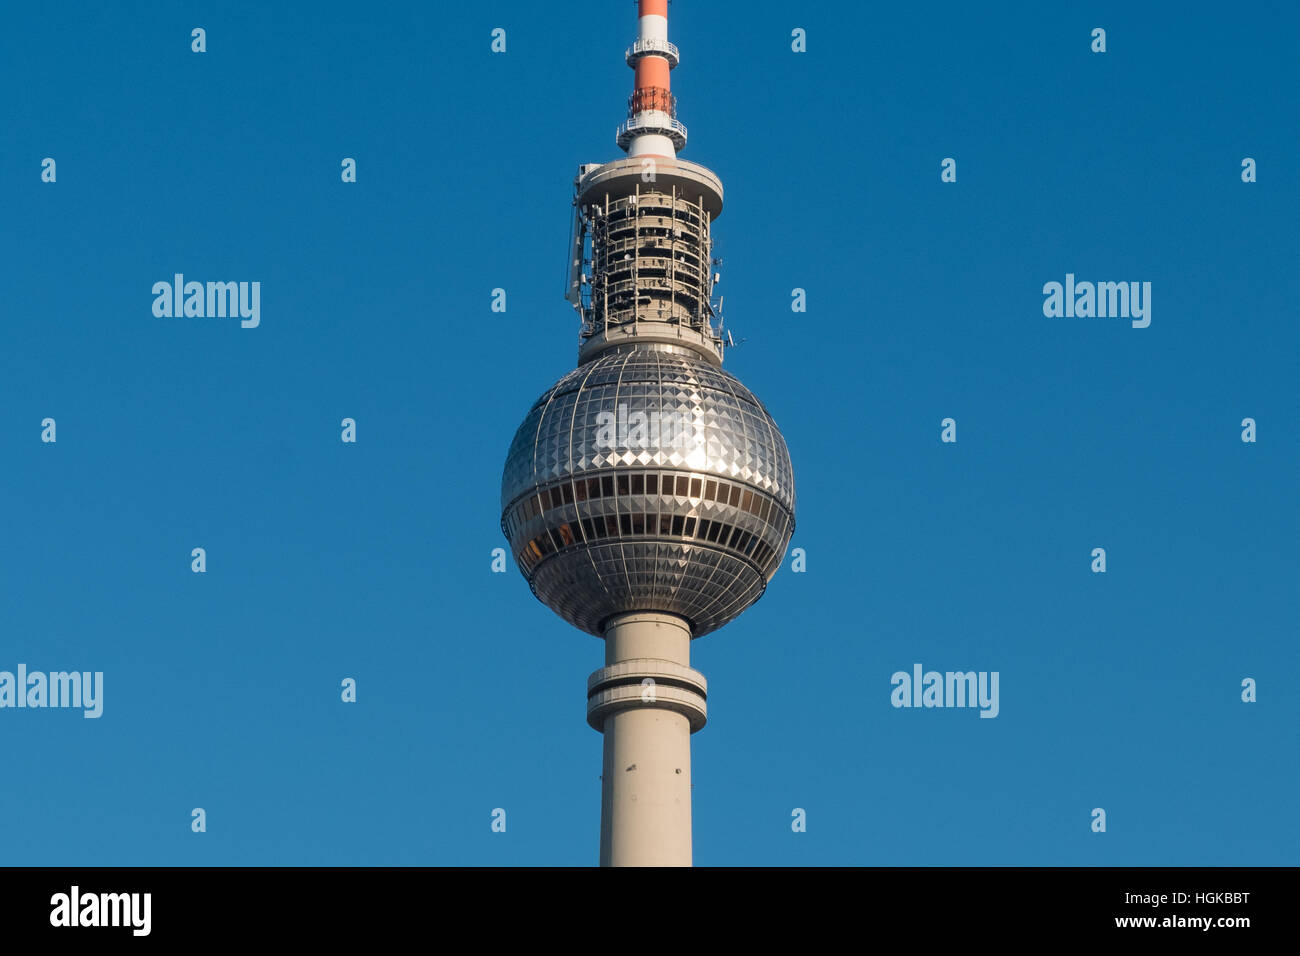 der Fernsehturm in Berlin - Fernsehturm, Fernsehturm, Stockfoto